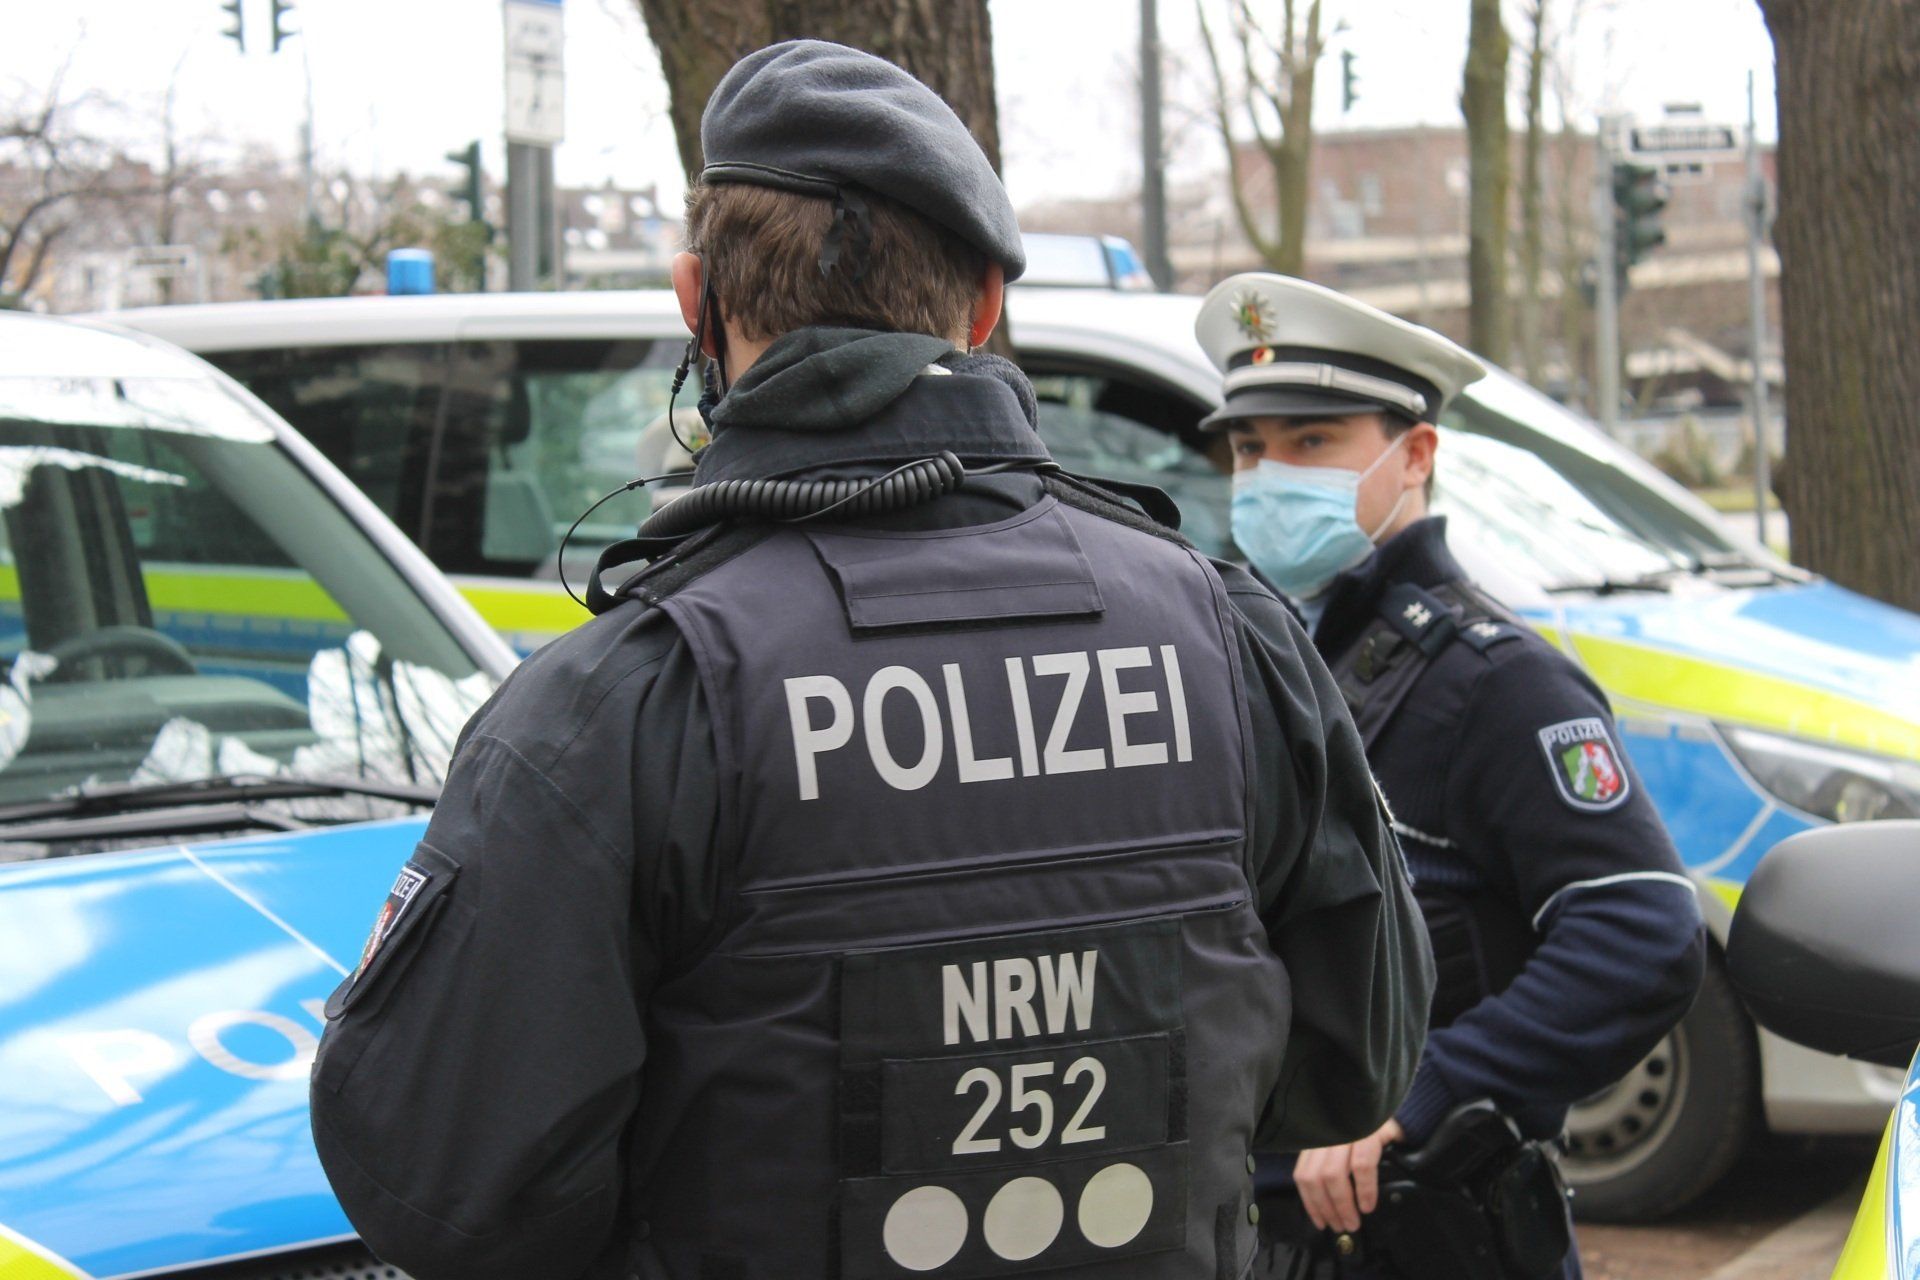 Einstellungsvoraussetzungen Polizei, Eignungsverfahren Bundespolizei, Testtraining Polizei, Online-Kurs Polizeitest